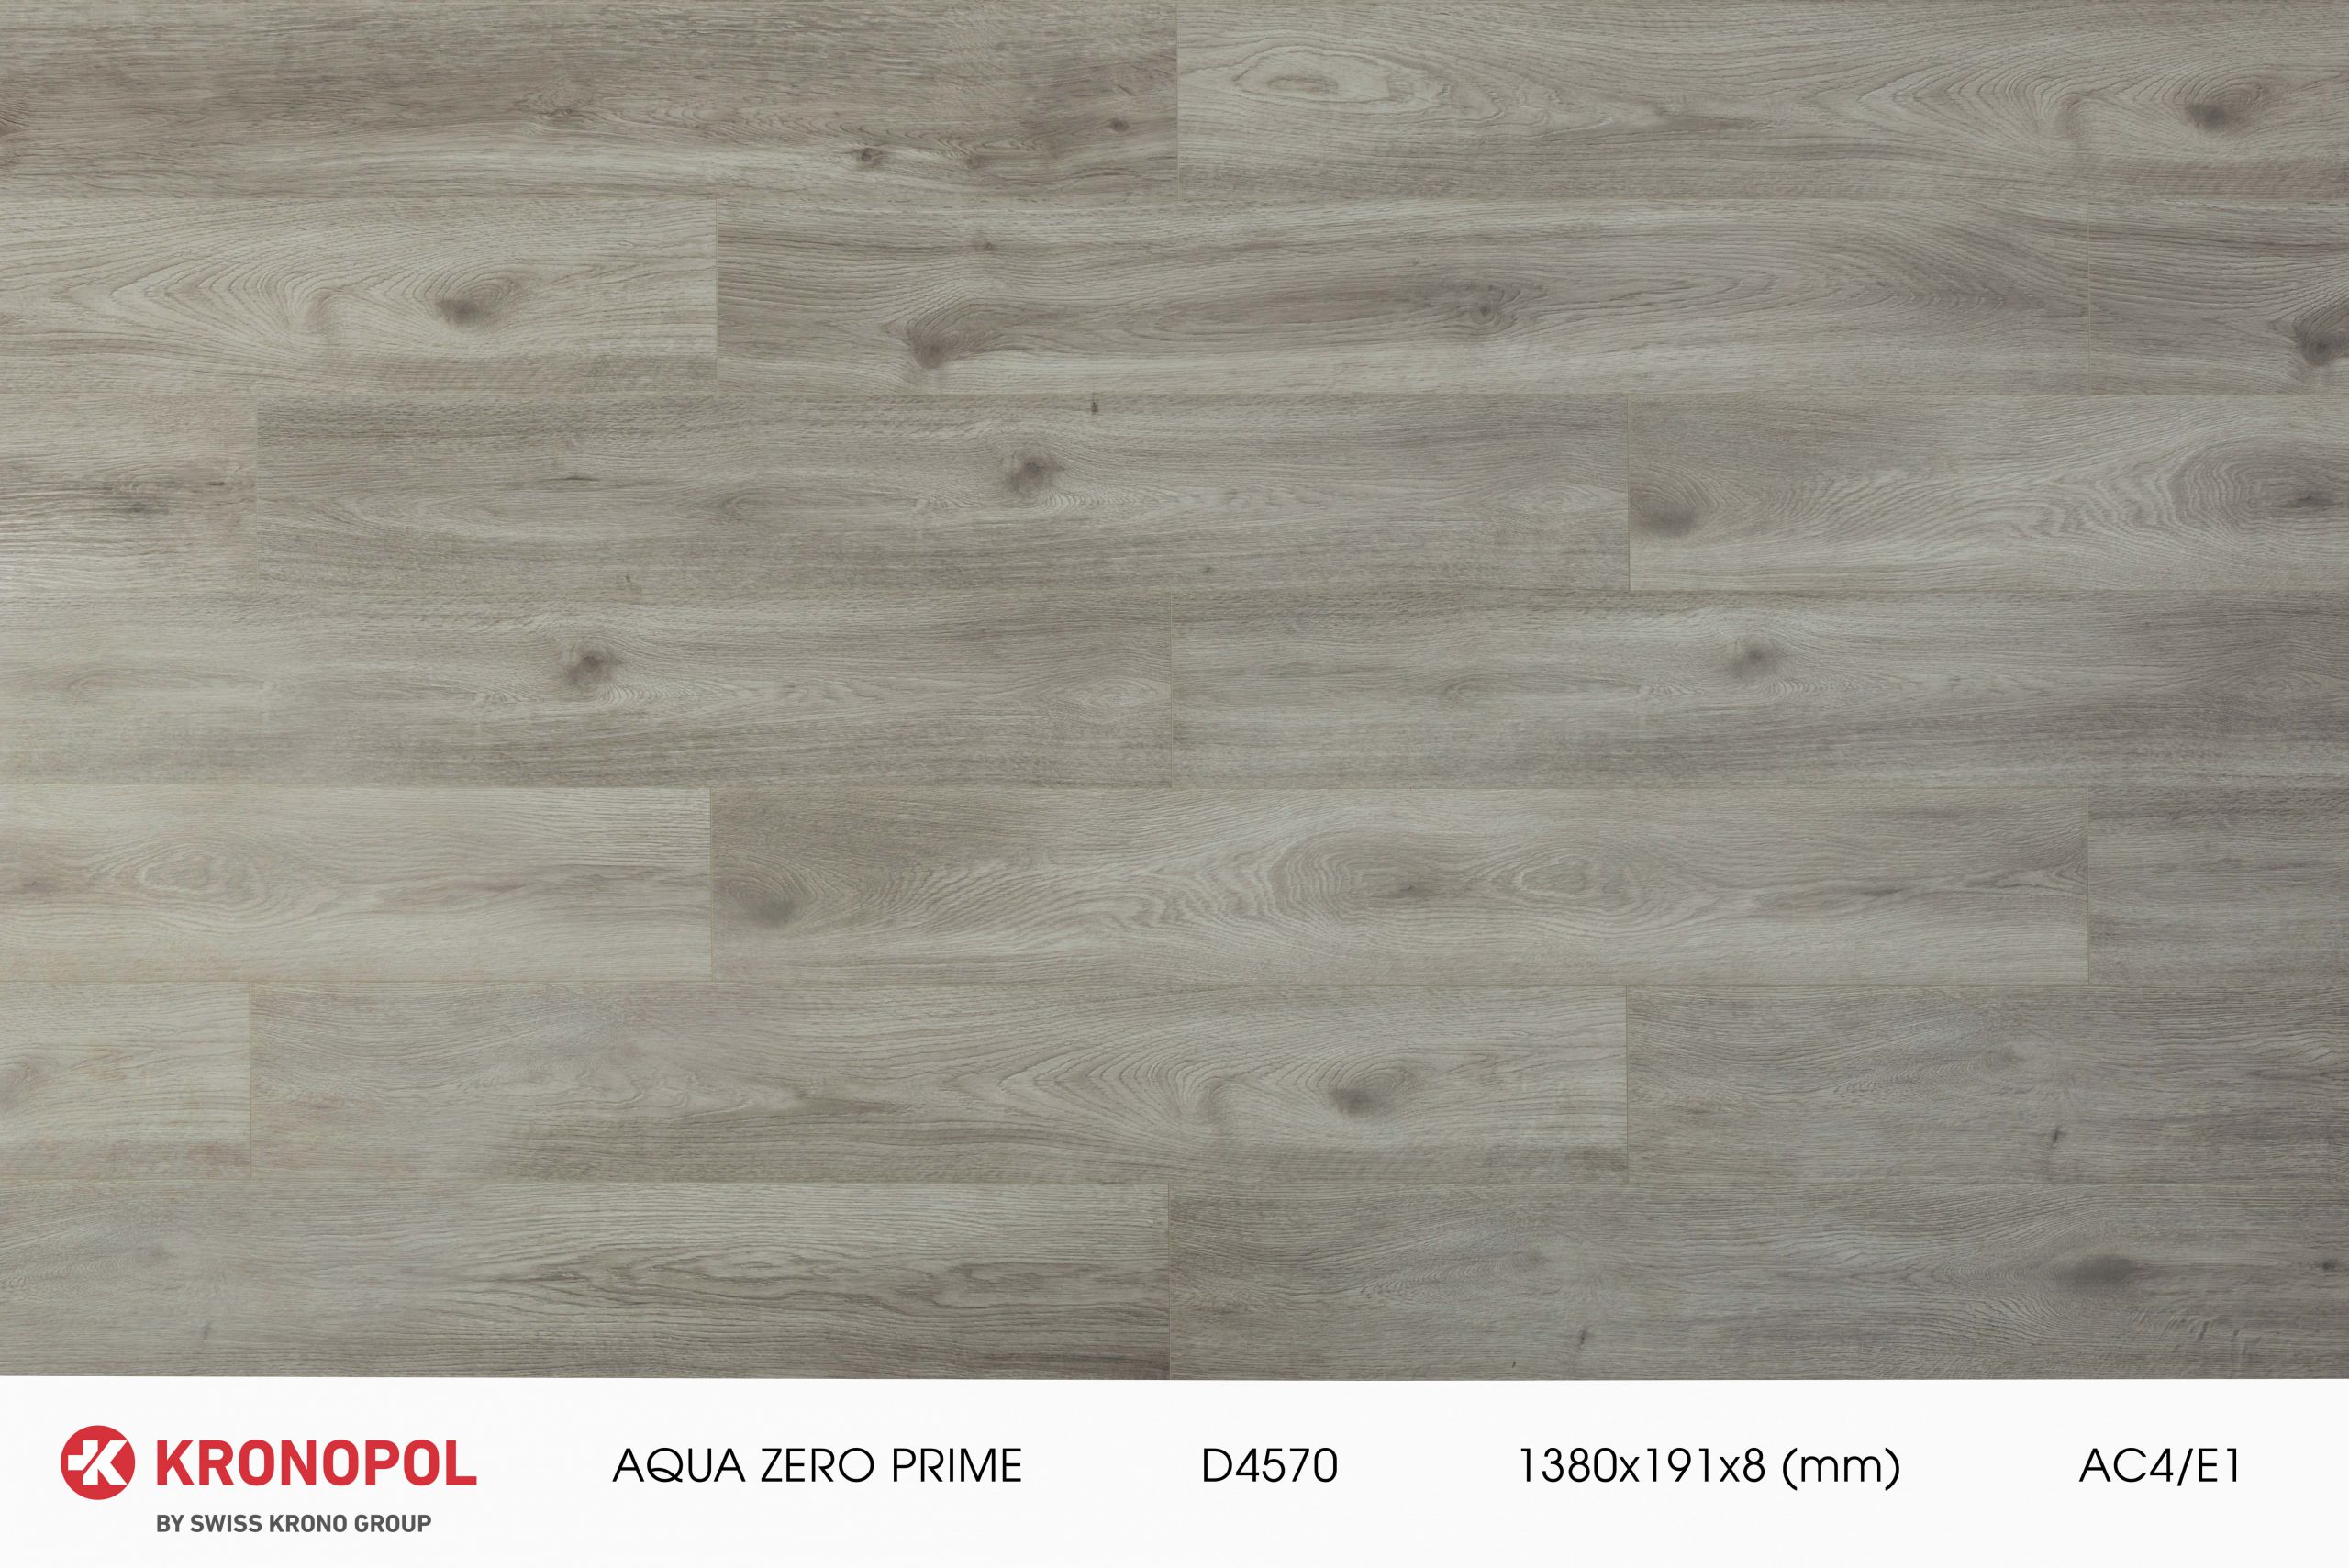 Sàn gỗ Kronopol là thương hiệu sàn gỗ được nhập khẩu nguyên hộp từ Ba Lan